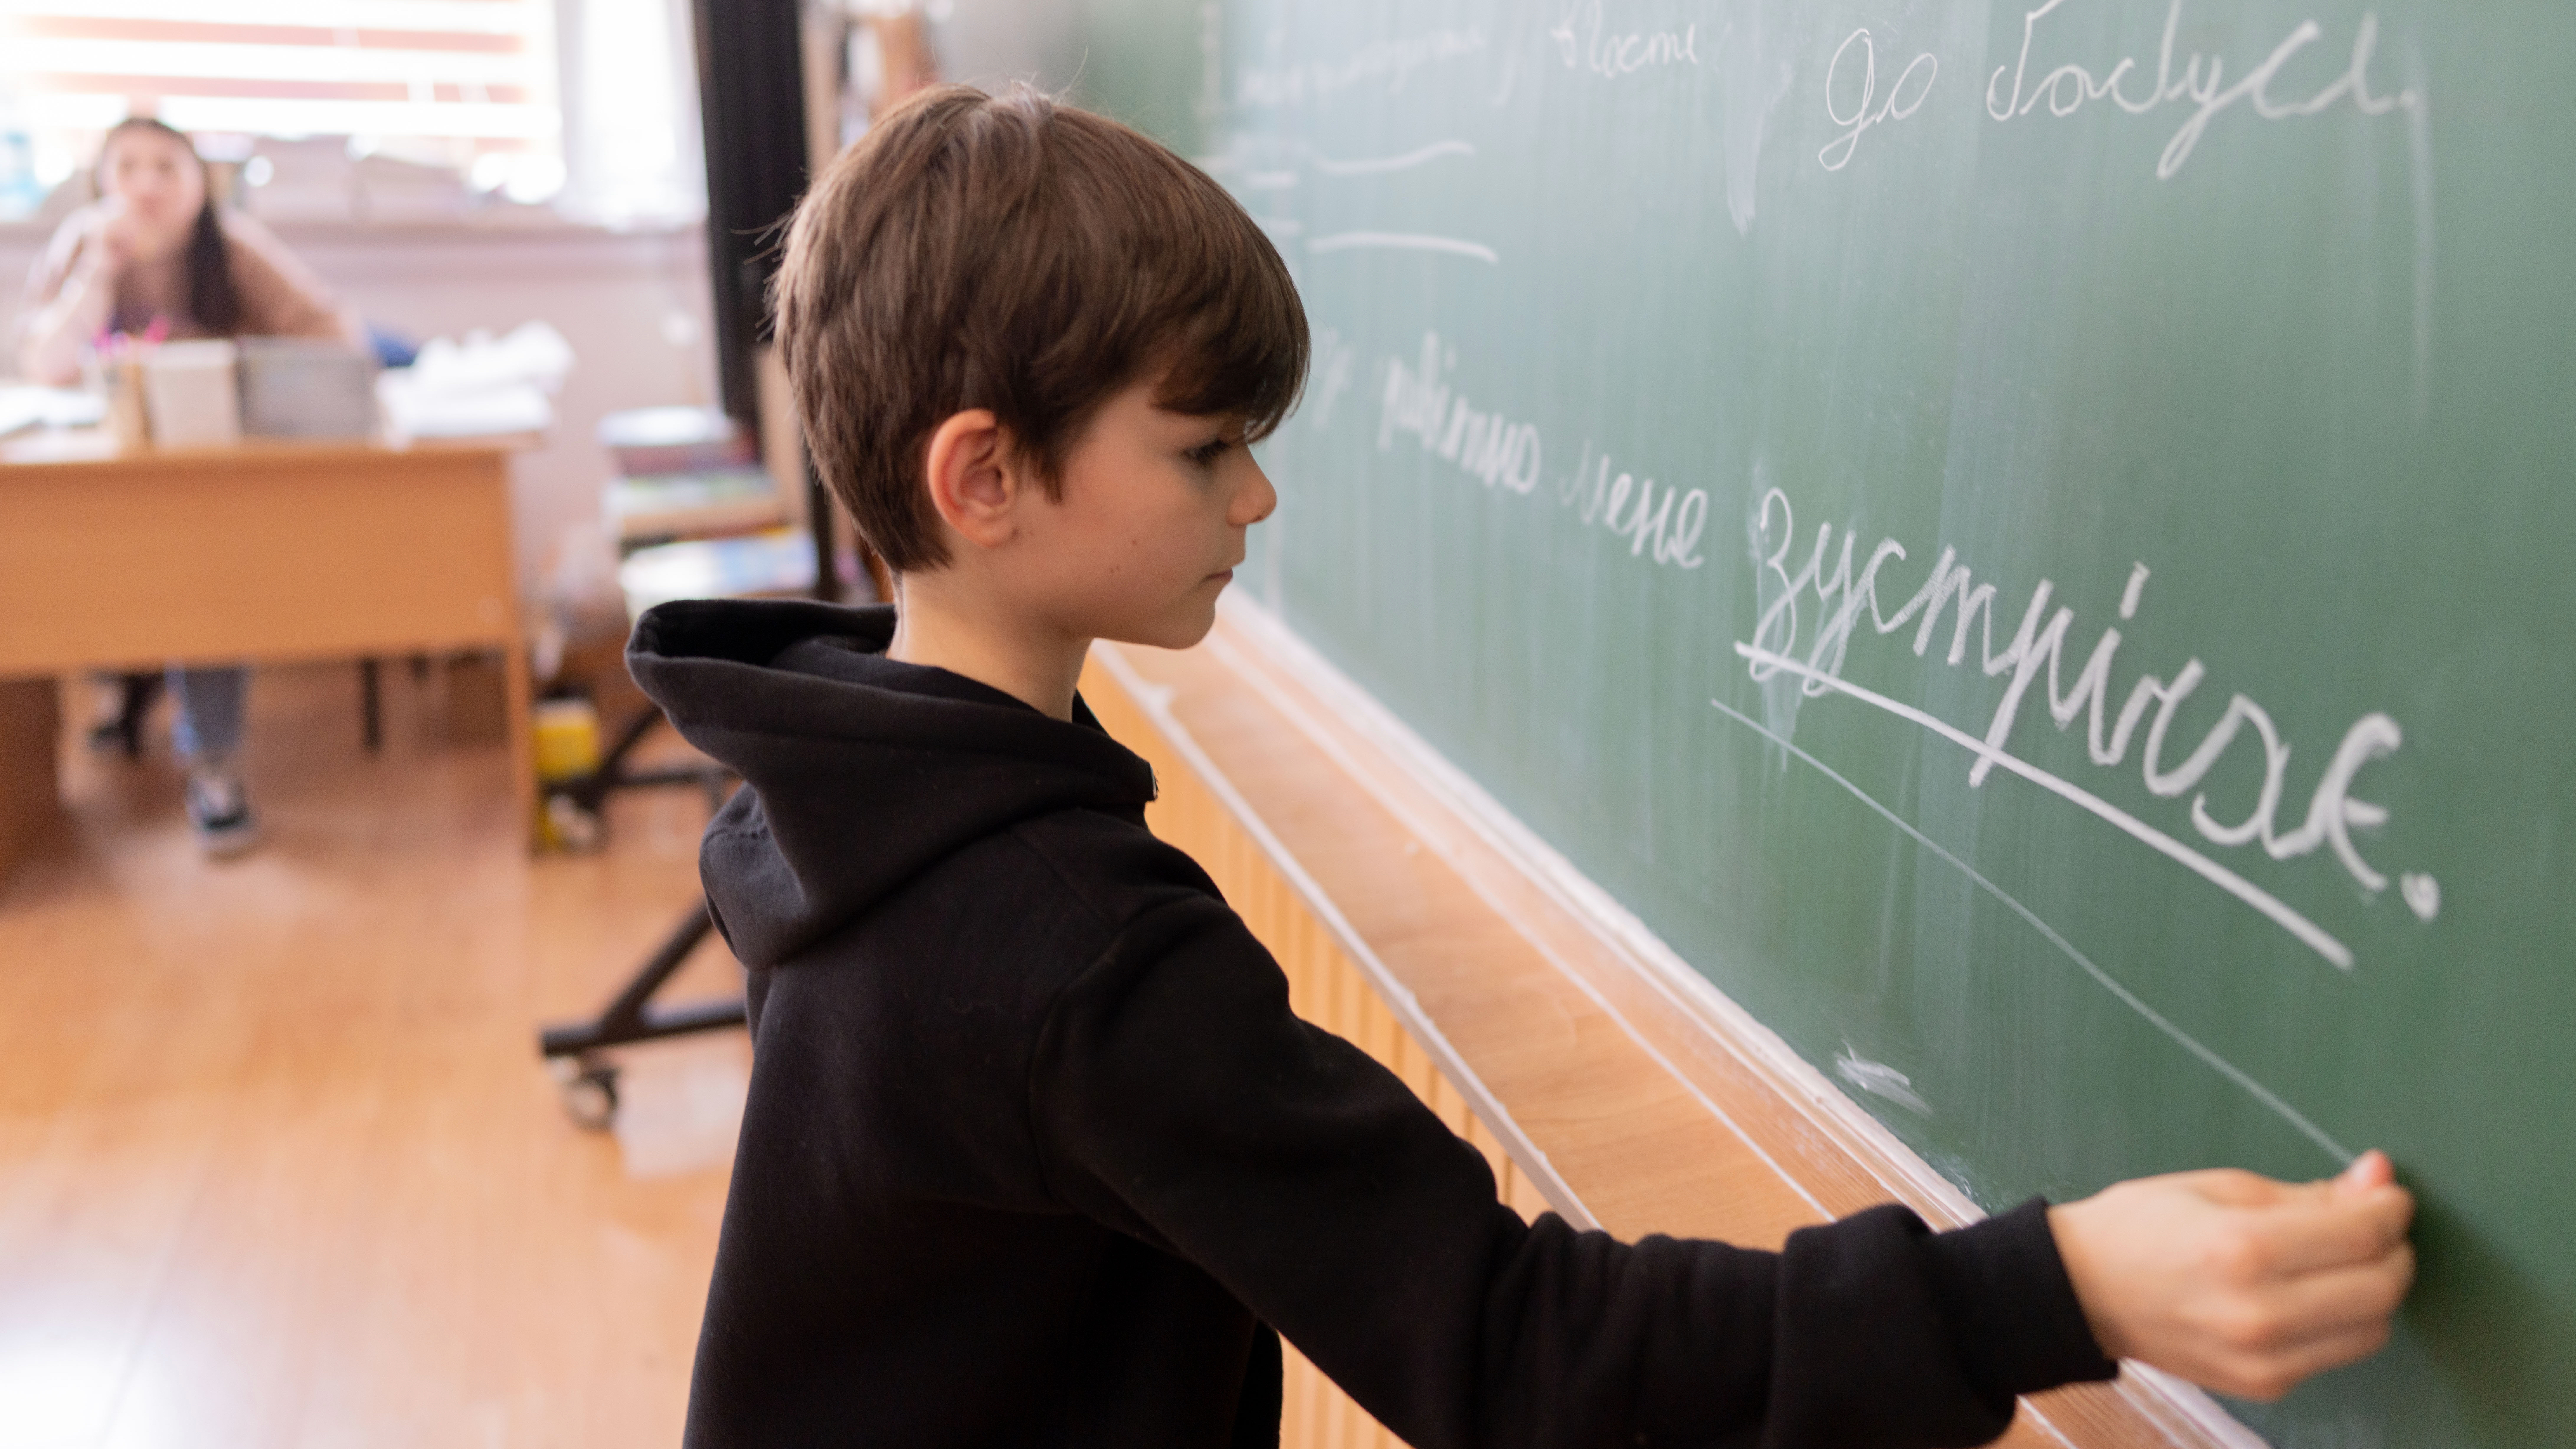 boy at chalkboard